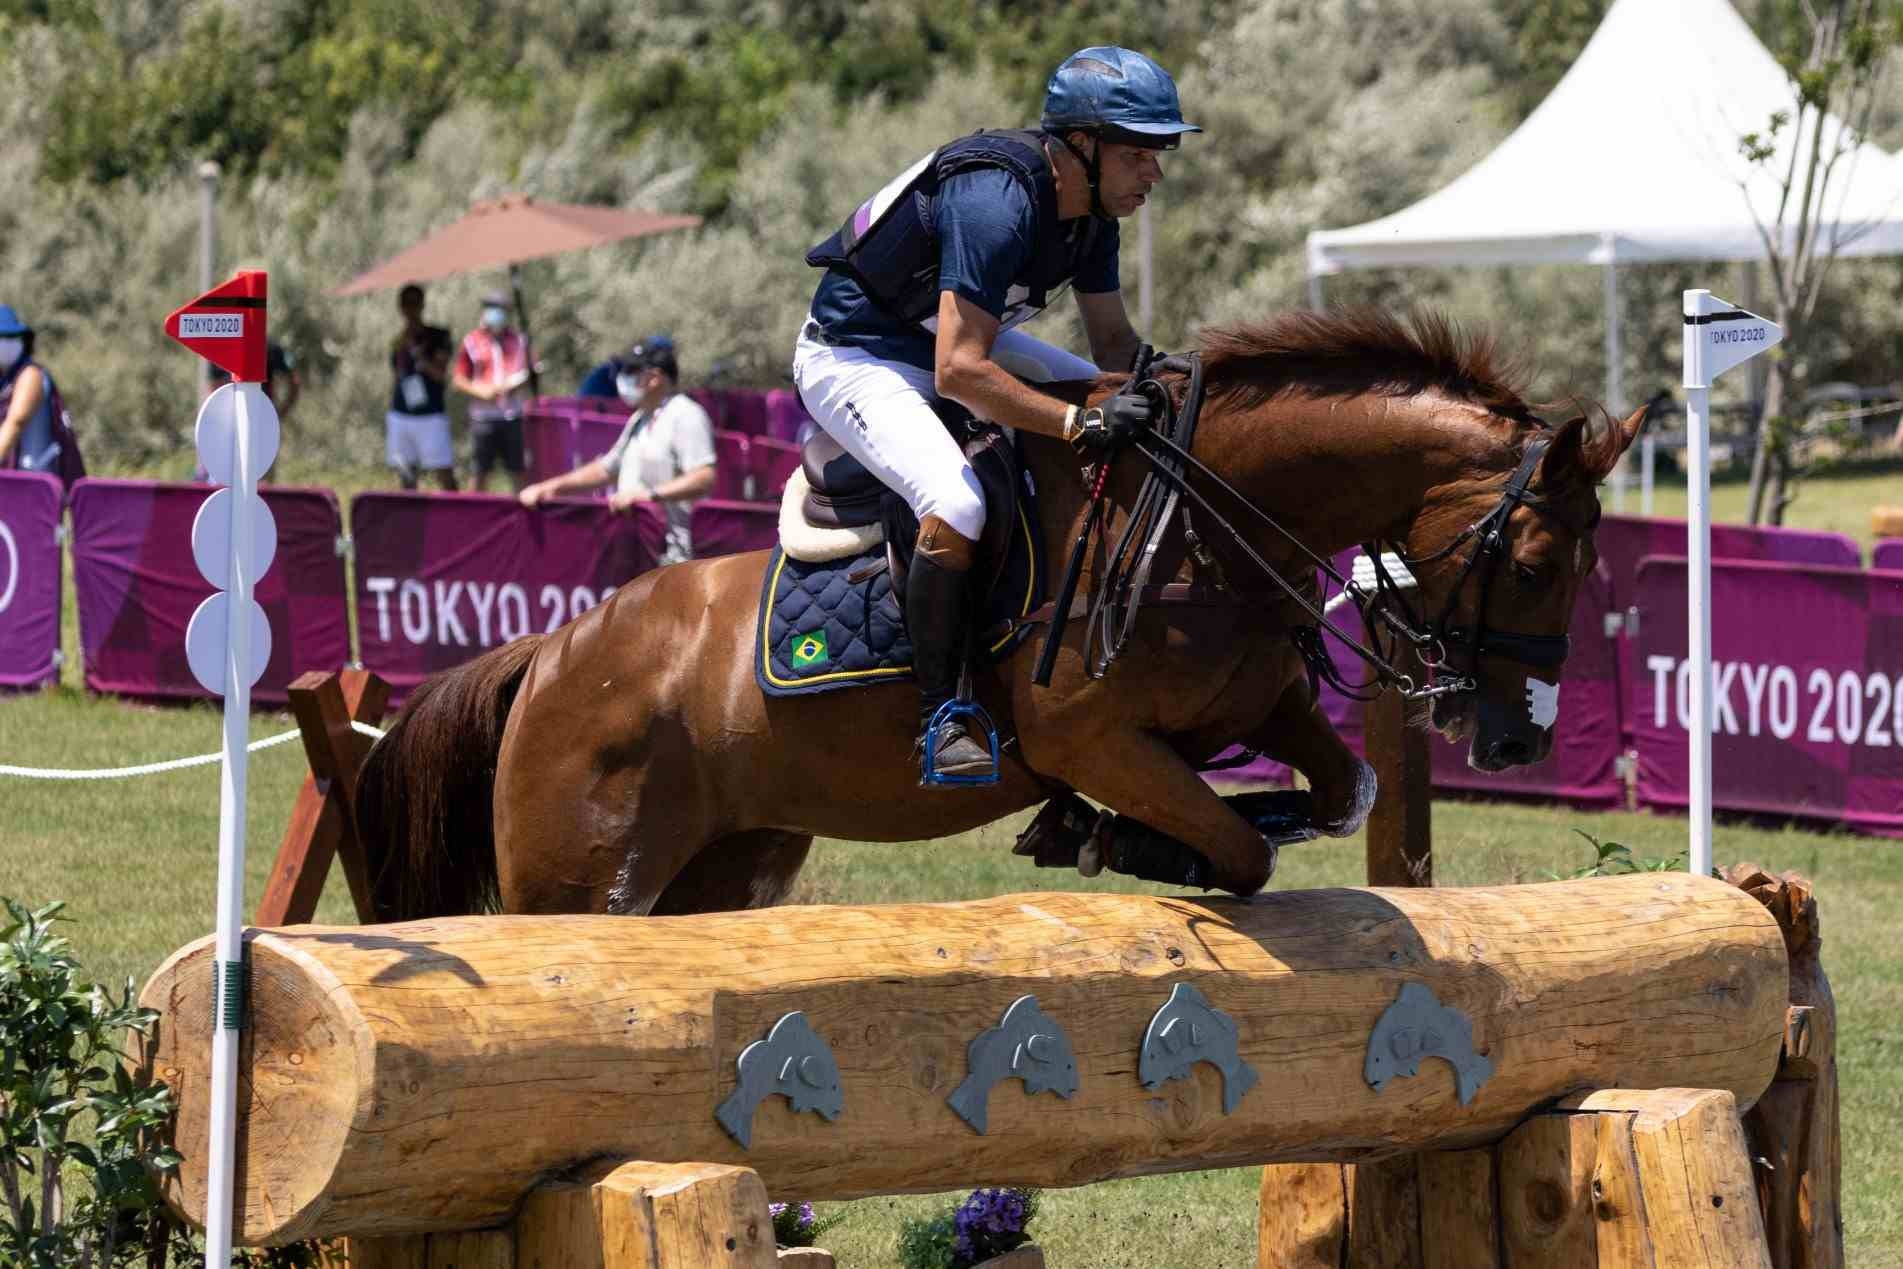 Carlos Parro e seu cavalo Goliath competindo em Tóquio